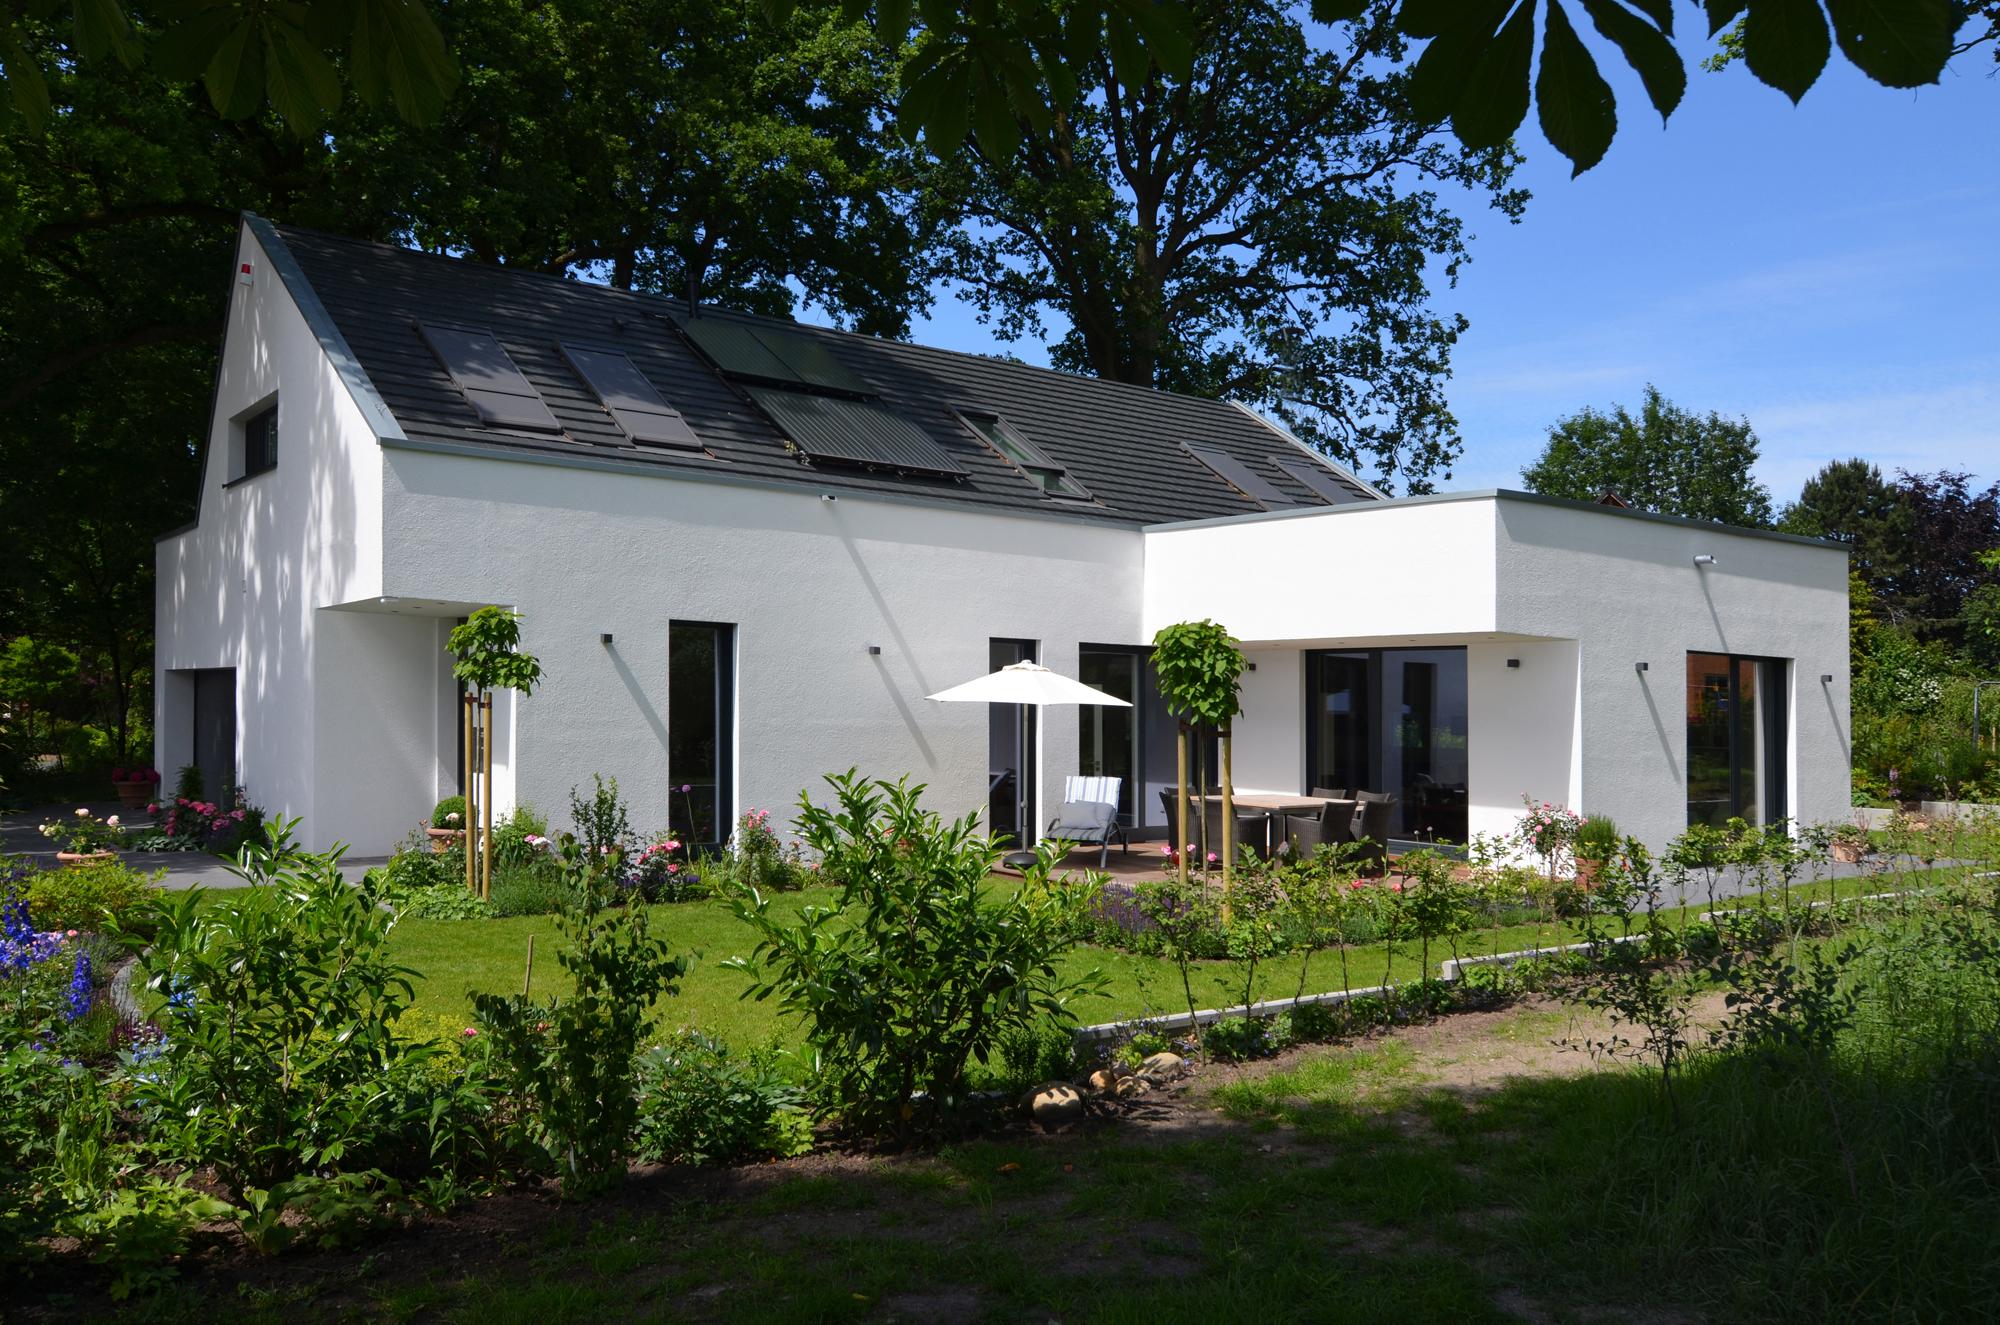 Einfamilienhaus im Grünen #vorgartengestaltung ©Frank Püffel